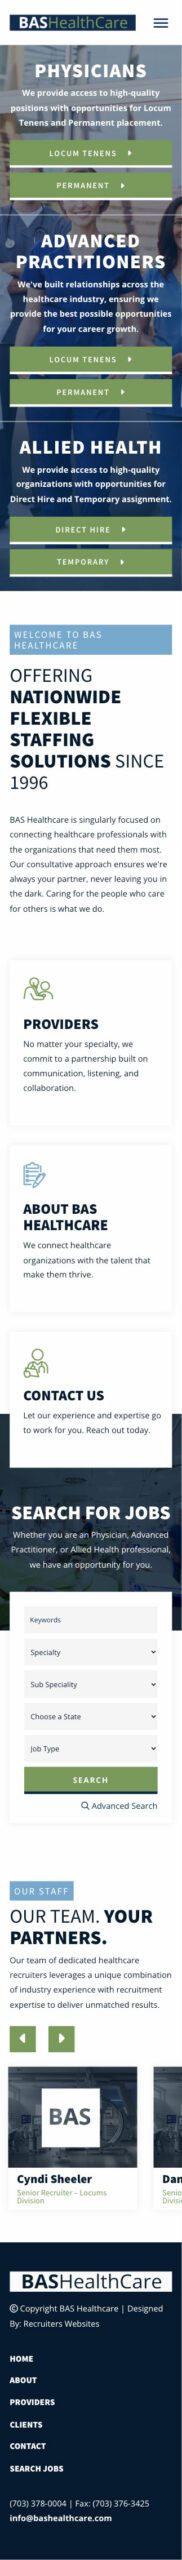 BAS Healthcare